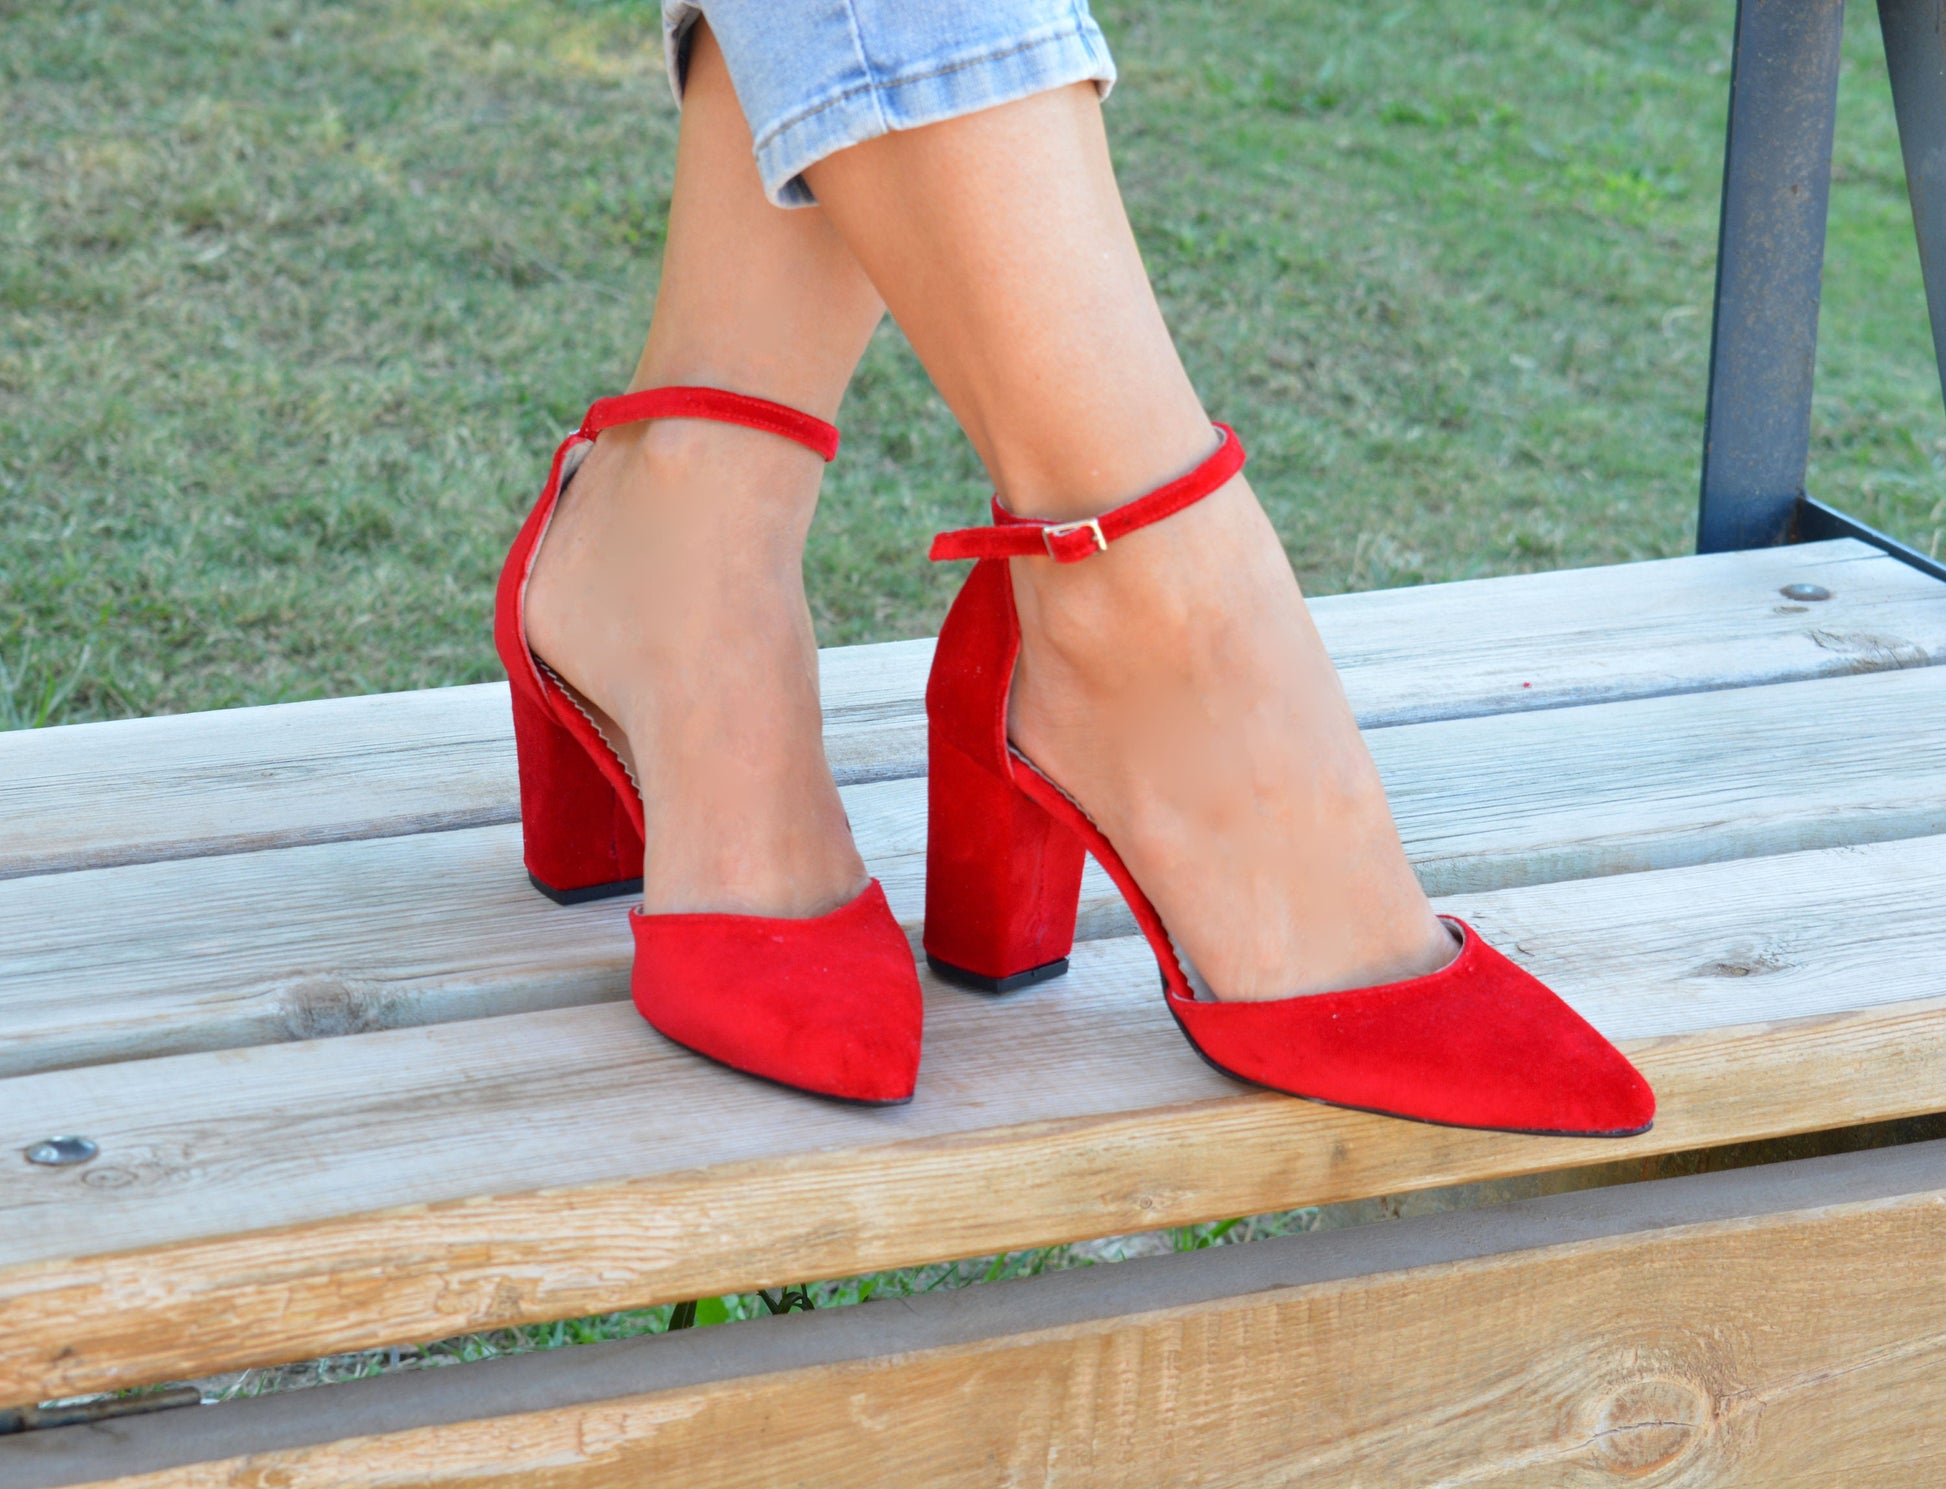 OSTTY - Women Pumps Bling Sexy High Heels Glitter Wedding Party Women Heels  Shoes $39.22